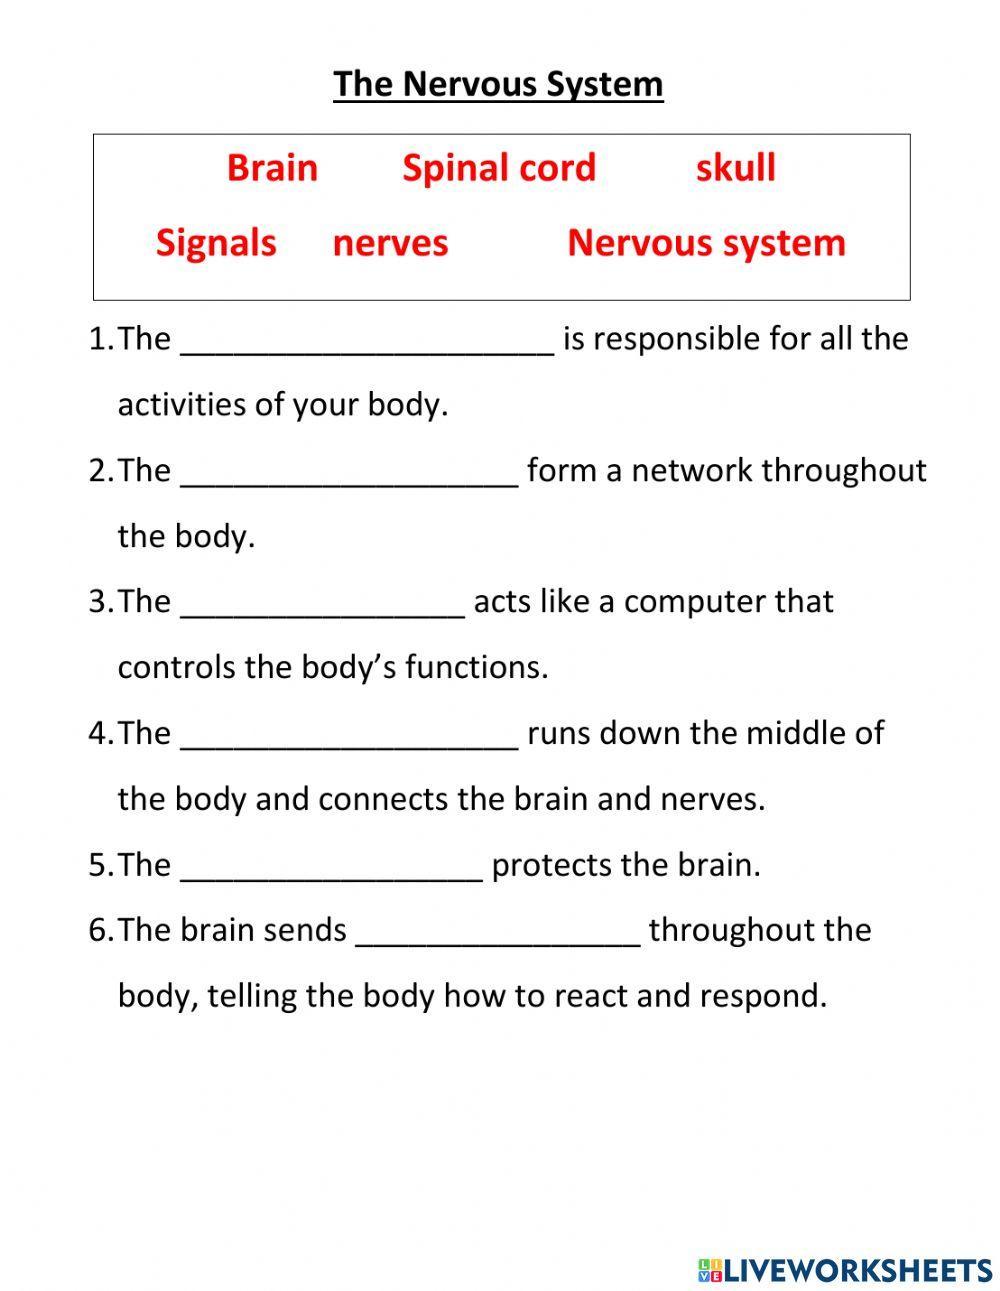 The Nervous System Worksheet